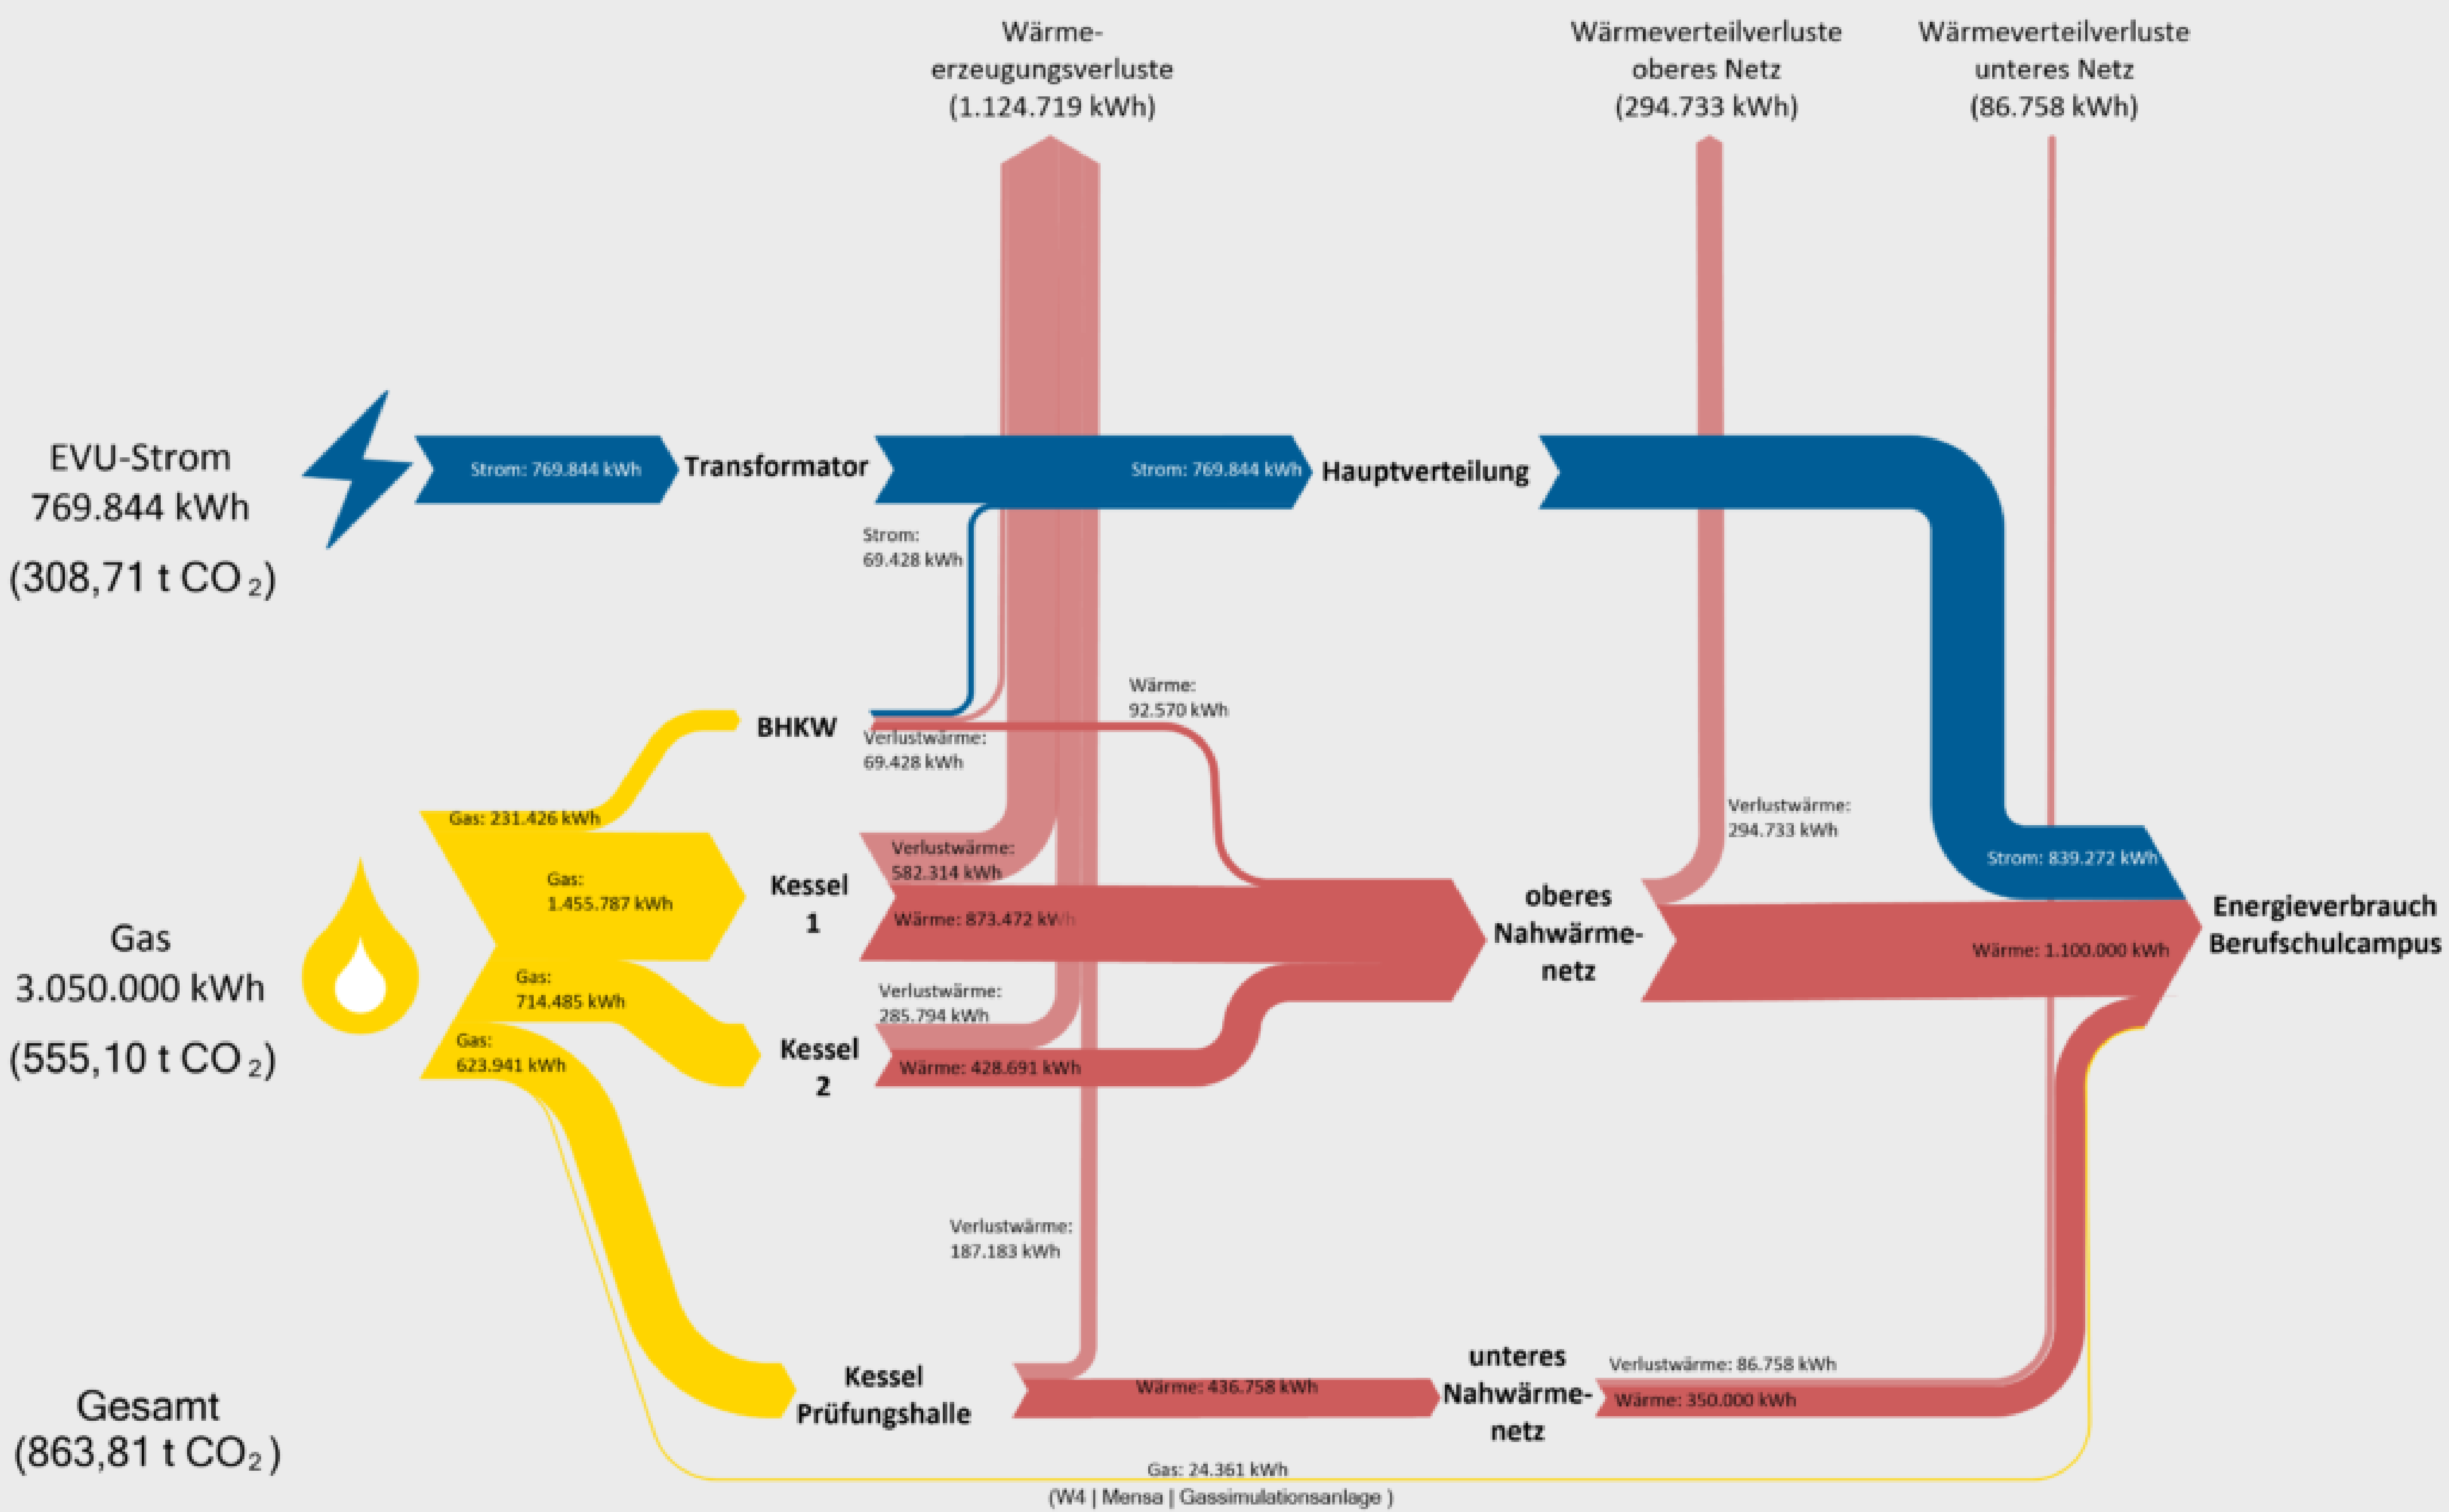 Sankey - Diagramm Berufschulcampus auf Normaljahr-Basis (Grundlage: Jahr 2019)